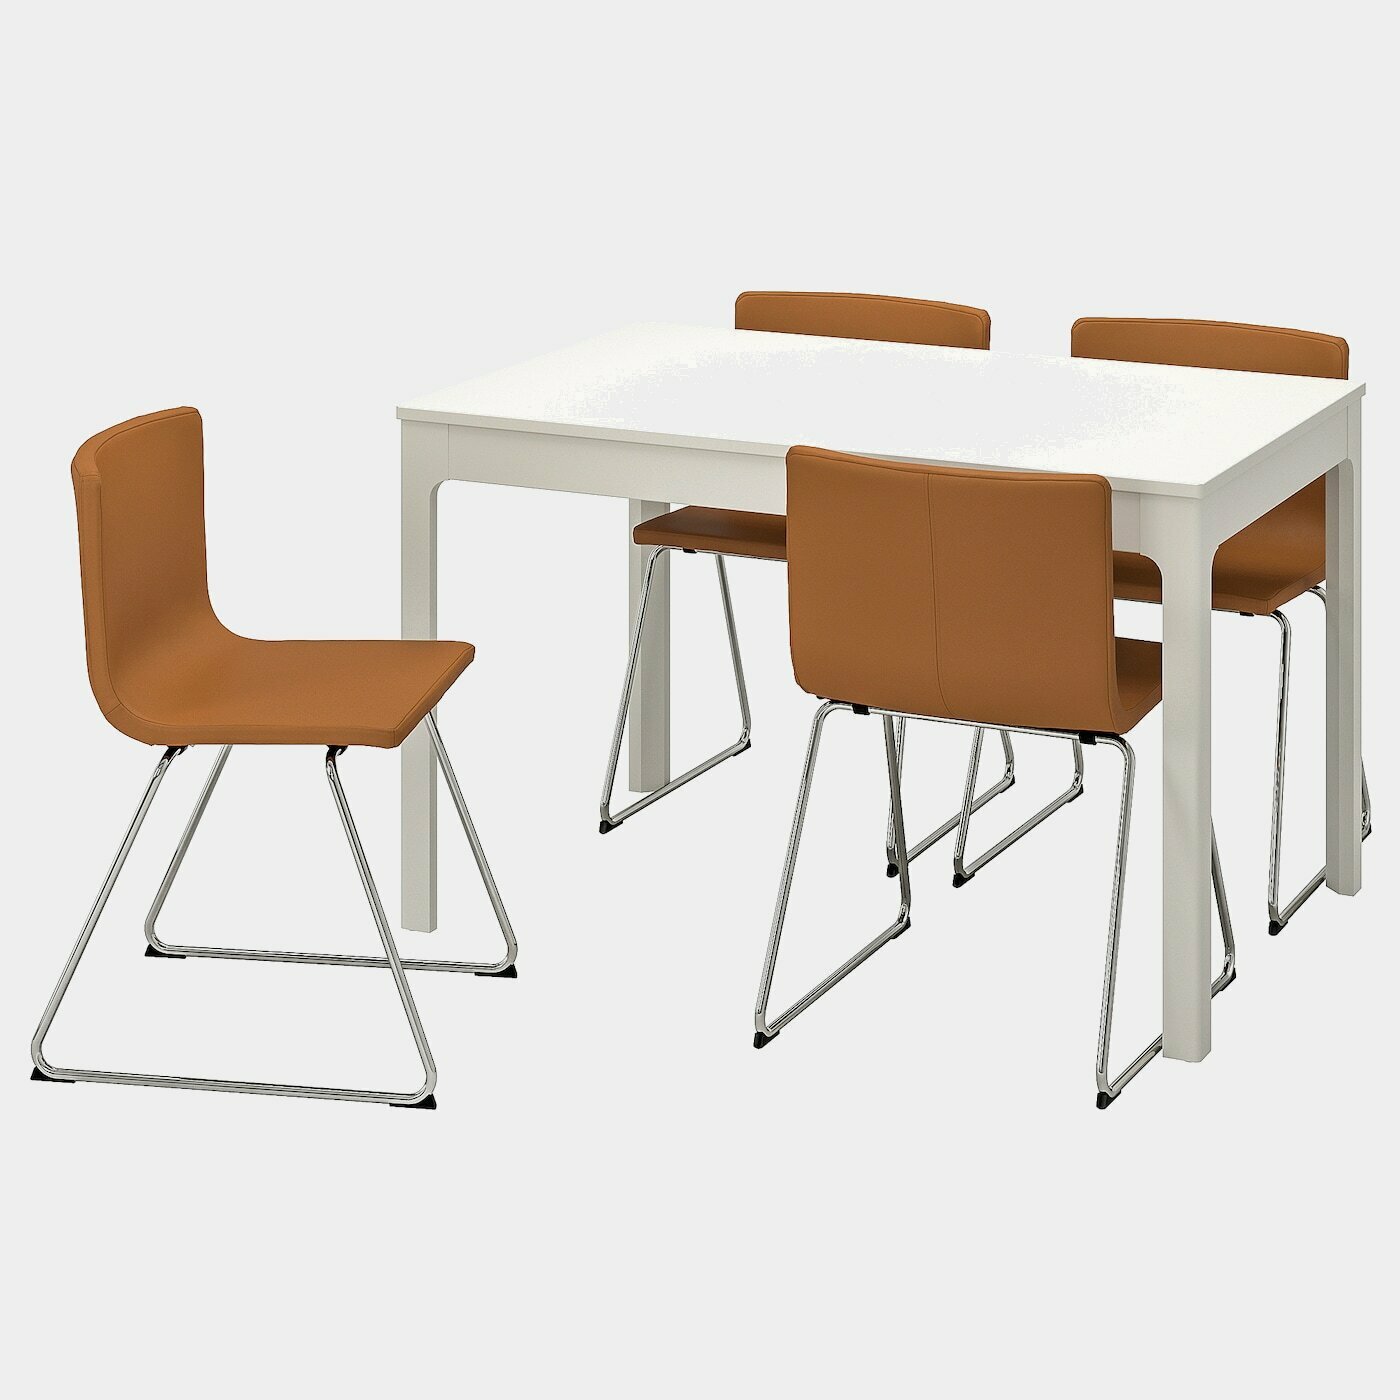 EKEDALEN / BERNHARD Tisch und 4 Stühle  - Essplatzgruppe - Möbel Ideen für dein Zuhause von Home Trends. Möbel Trends von Social Media Influencer für dein Skandi Zuhause.